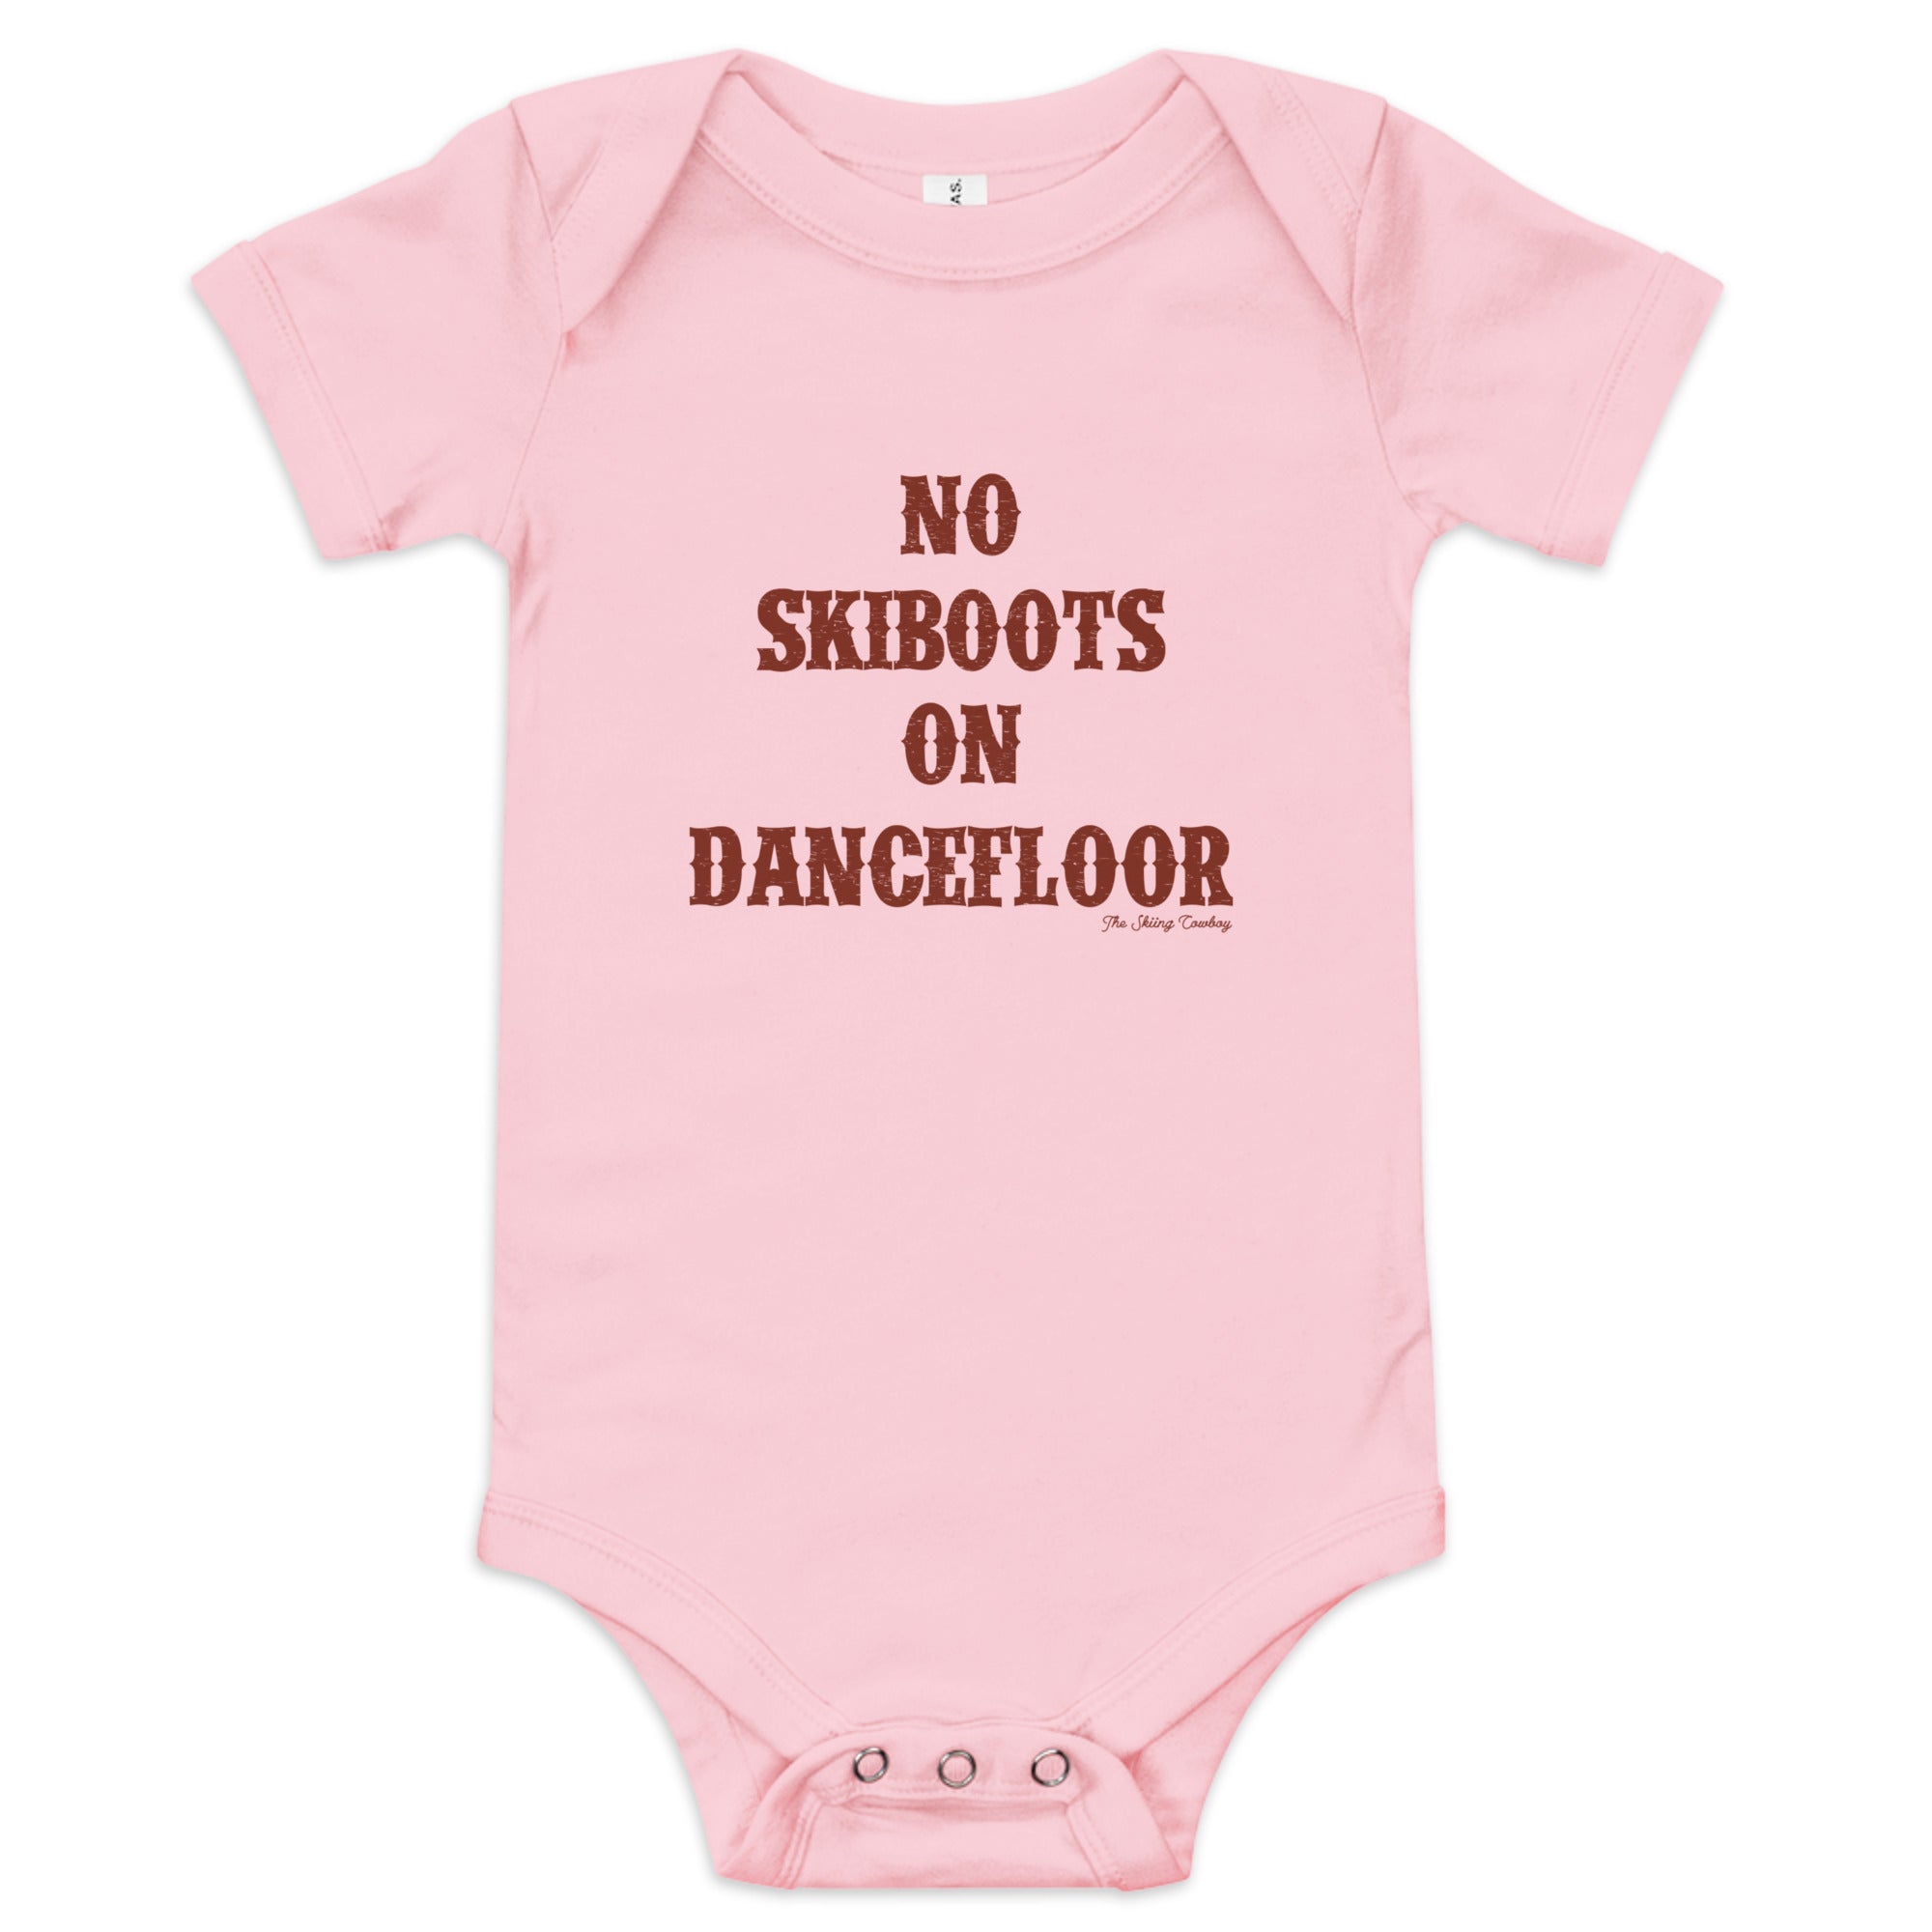 Body à manches courtes bébé No Skiboots on Dancefloor texte foncé